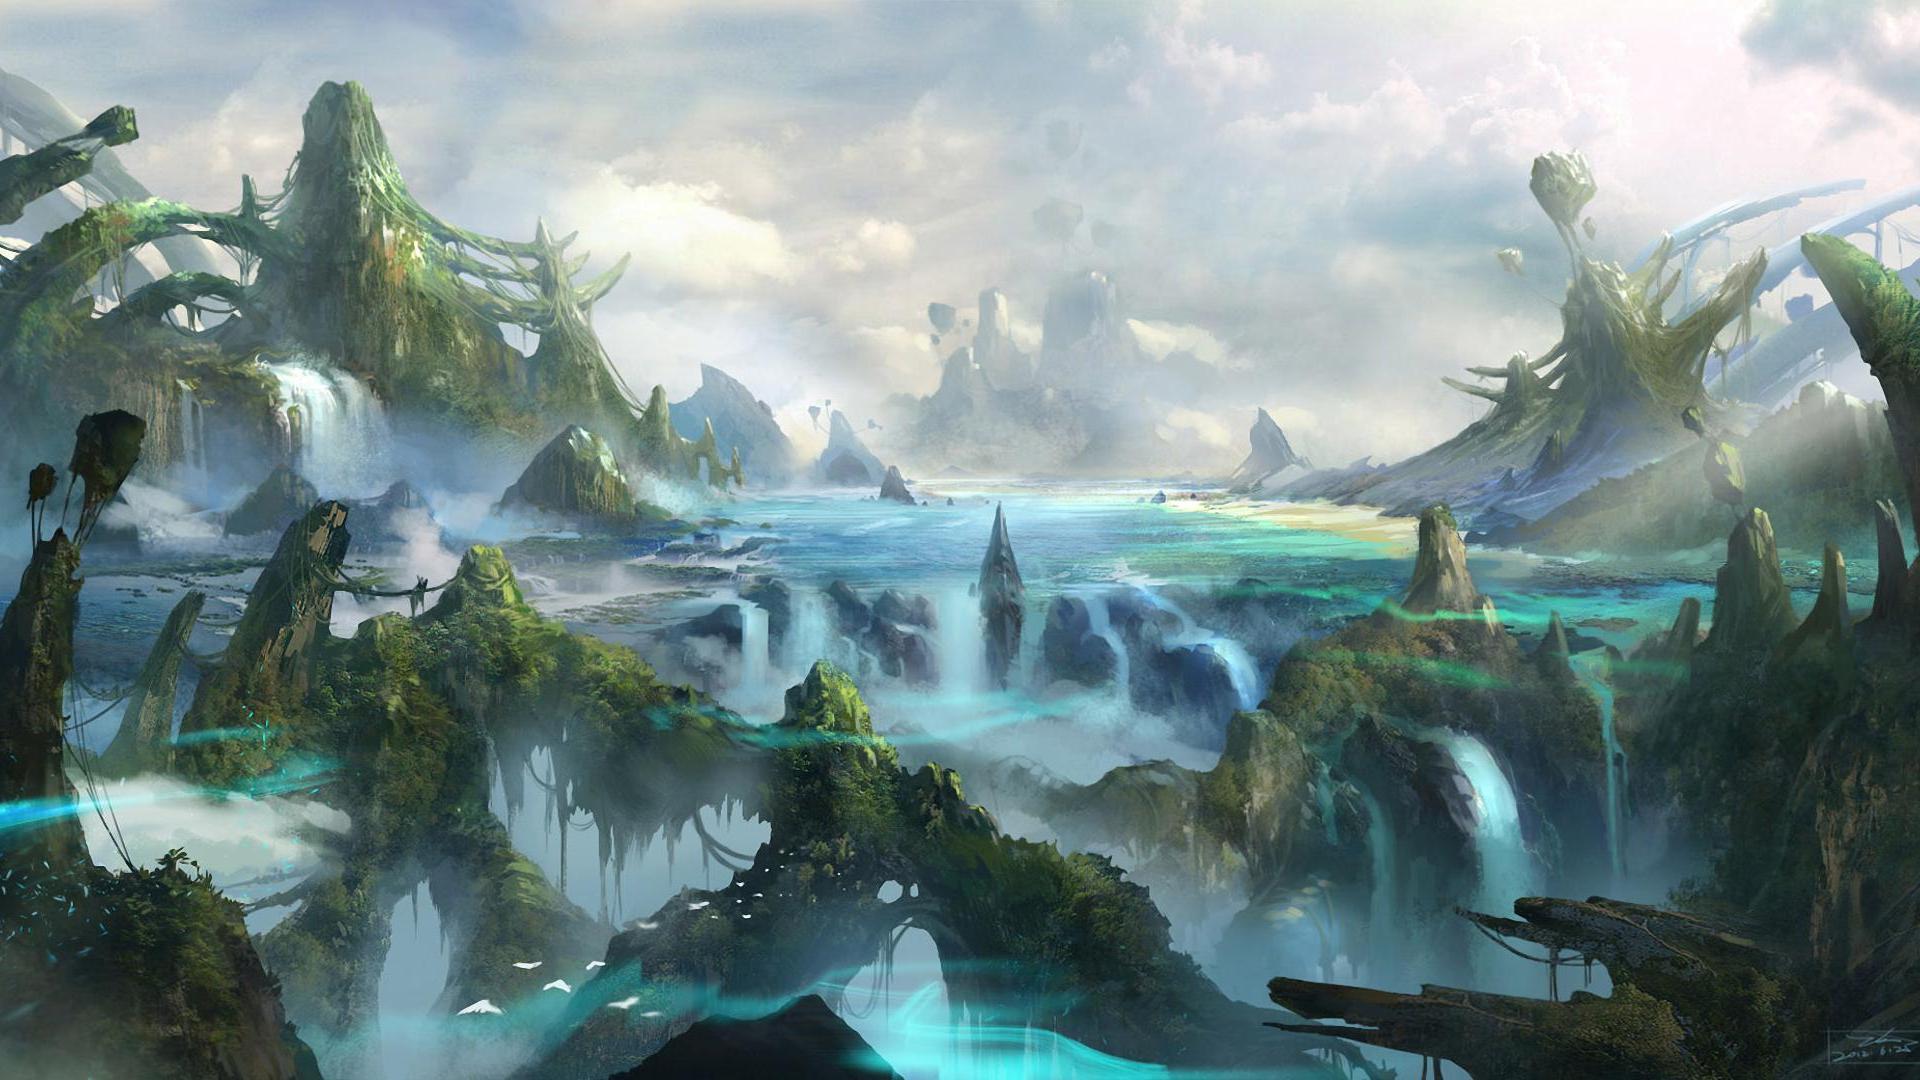 Fantasy Forest Landscape Desktop Wallpaper